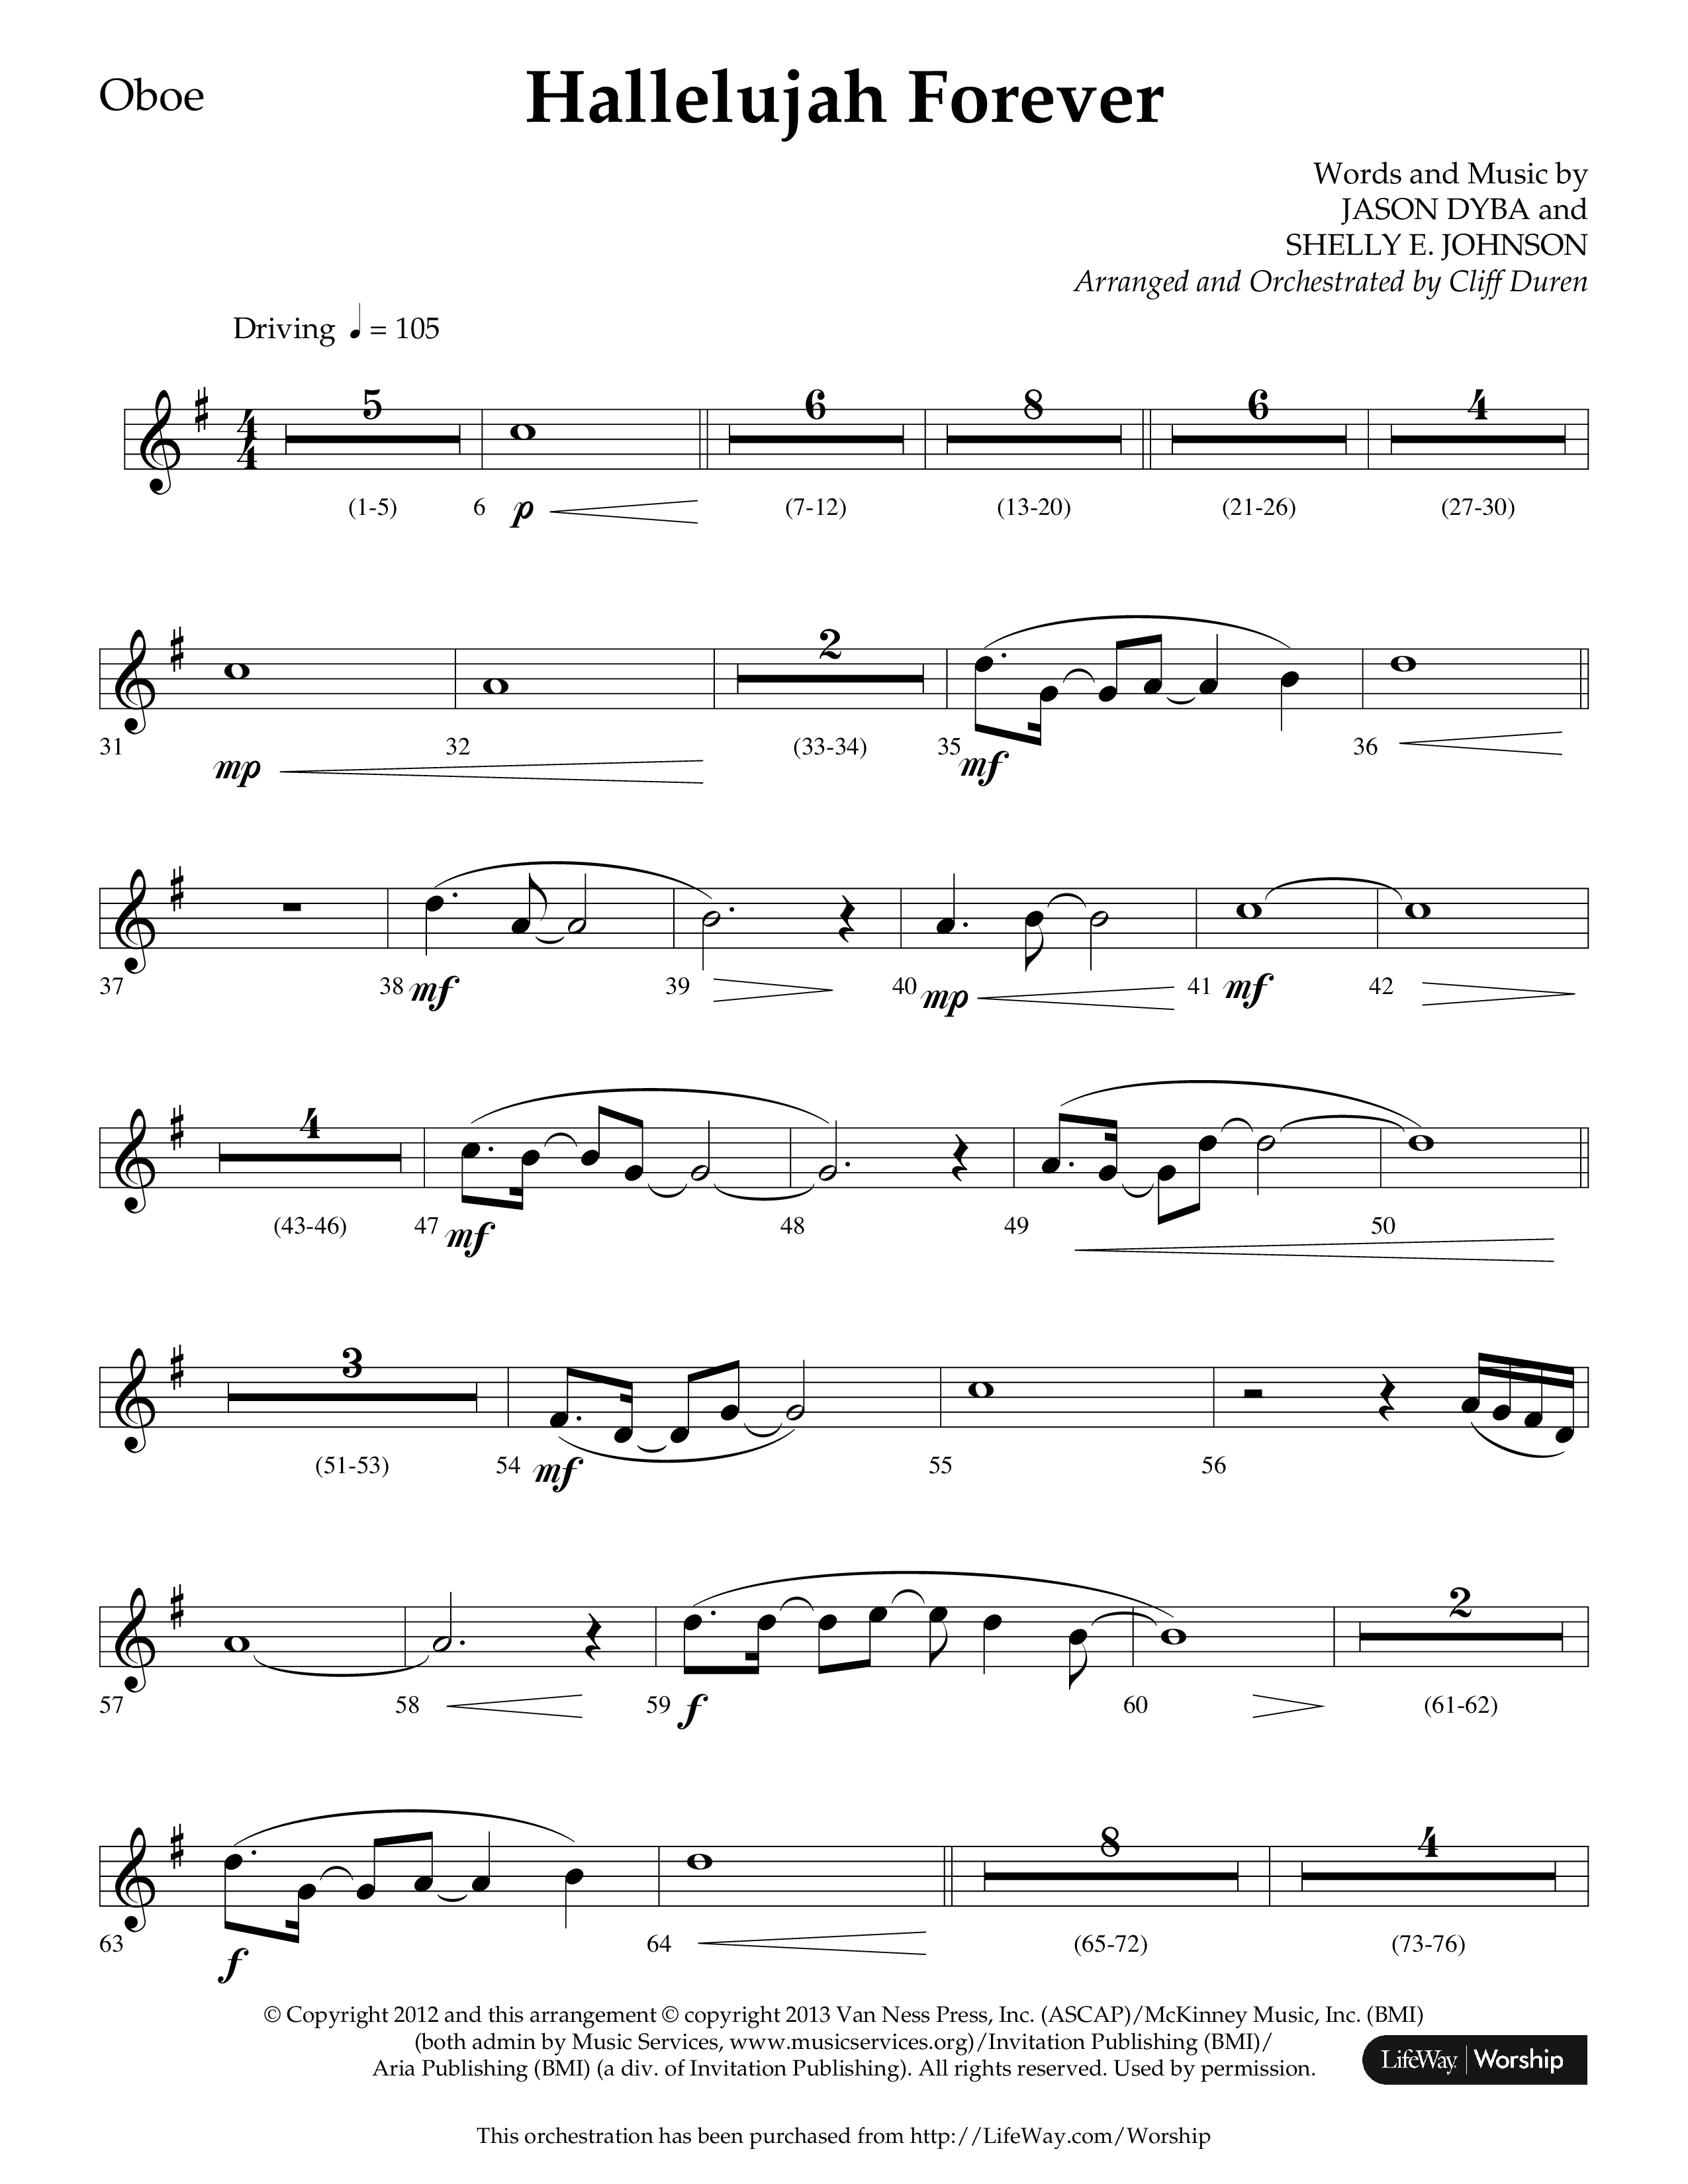 Hallelujah Forever (Choral Anthem SATB) Oboe (Lifeway Choral / Arr. Cliff Duren)